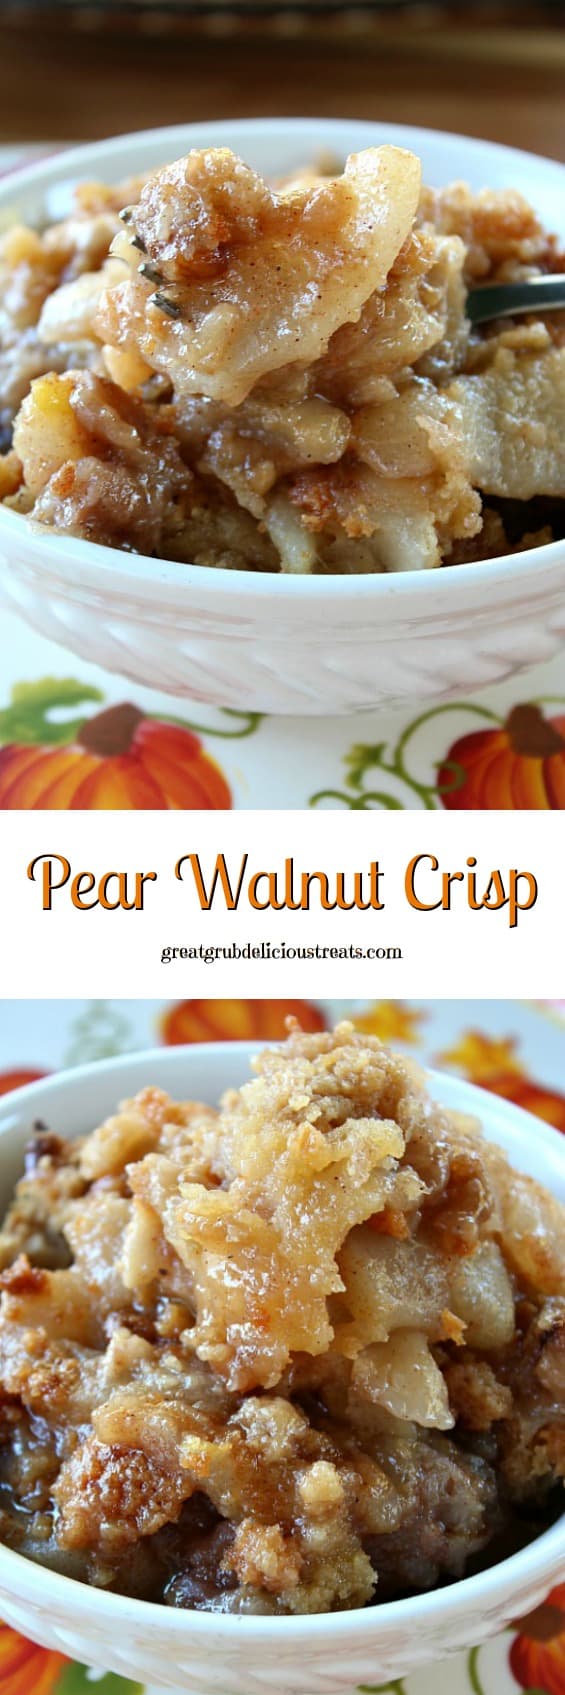 Pear Walnut Crisp